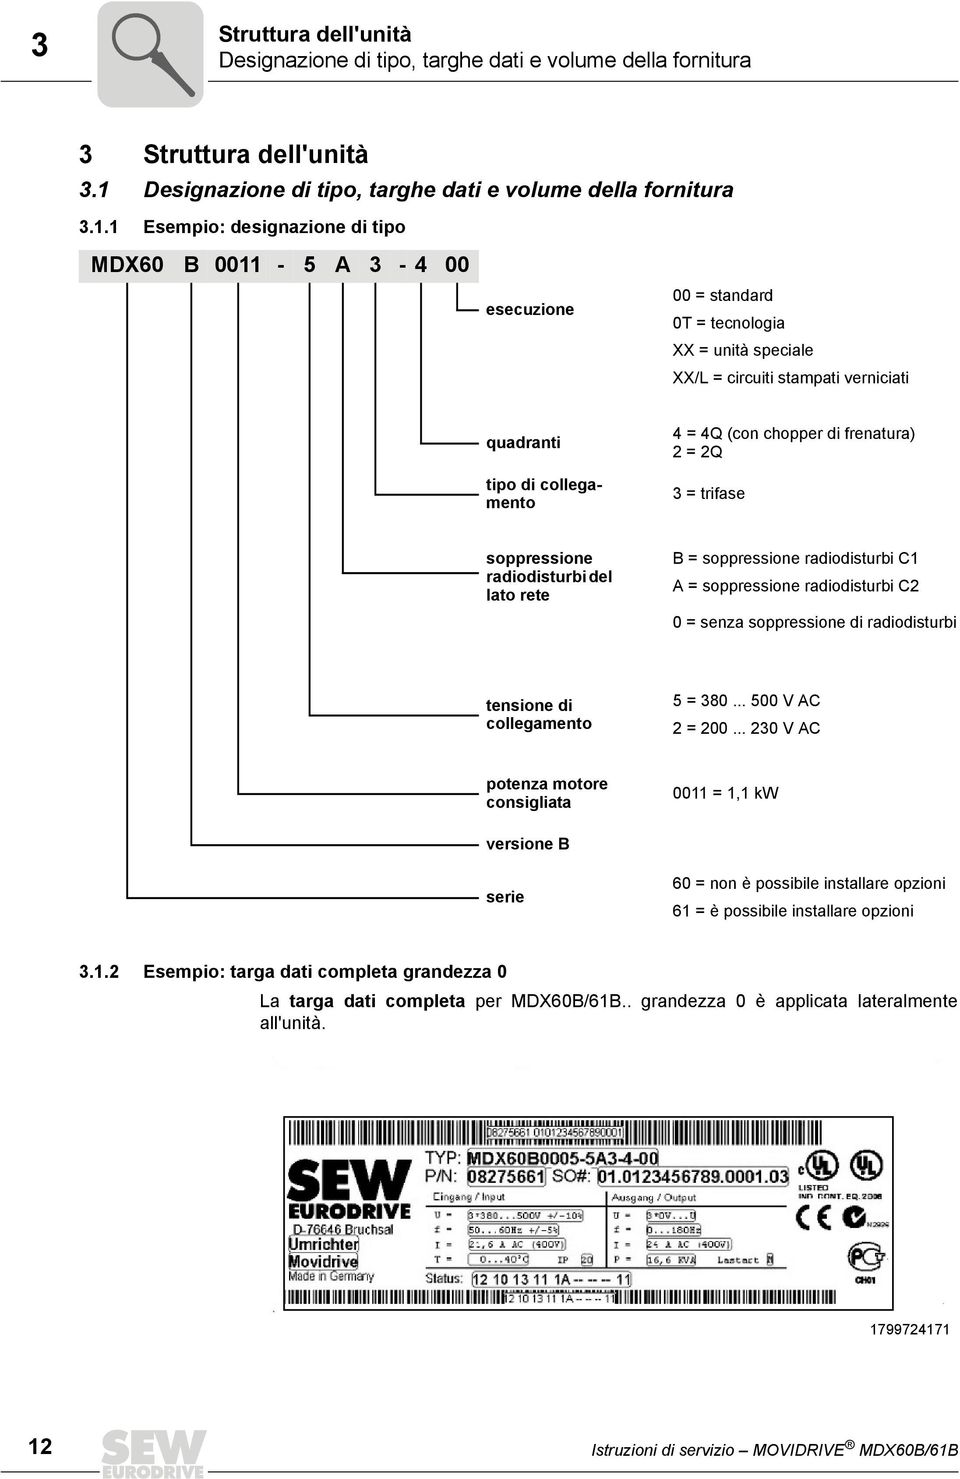 1 Esempio: designazione di tipo MDX60 B 0011-5 A 3-4 00 esecuzione 00 = standard 0T = tecnologia XX = unità speciale XX/L = circuiti stampati verniciati quadranti tipo di collegamento 4 = 4Q (con